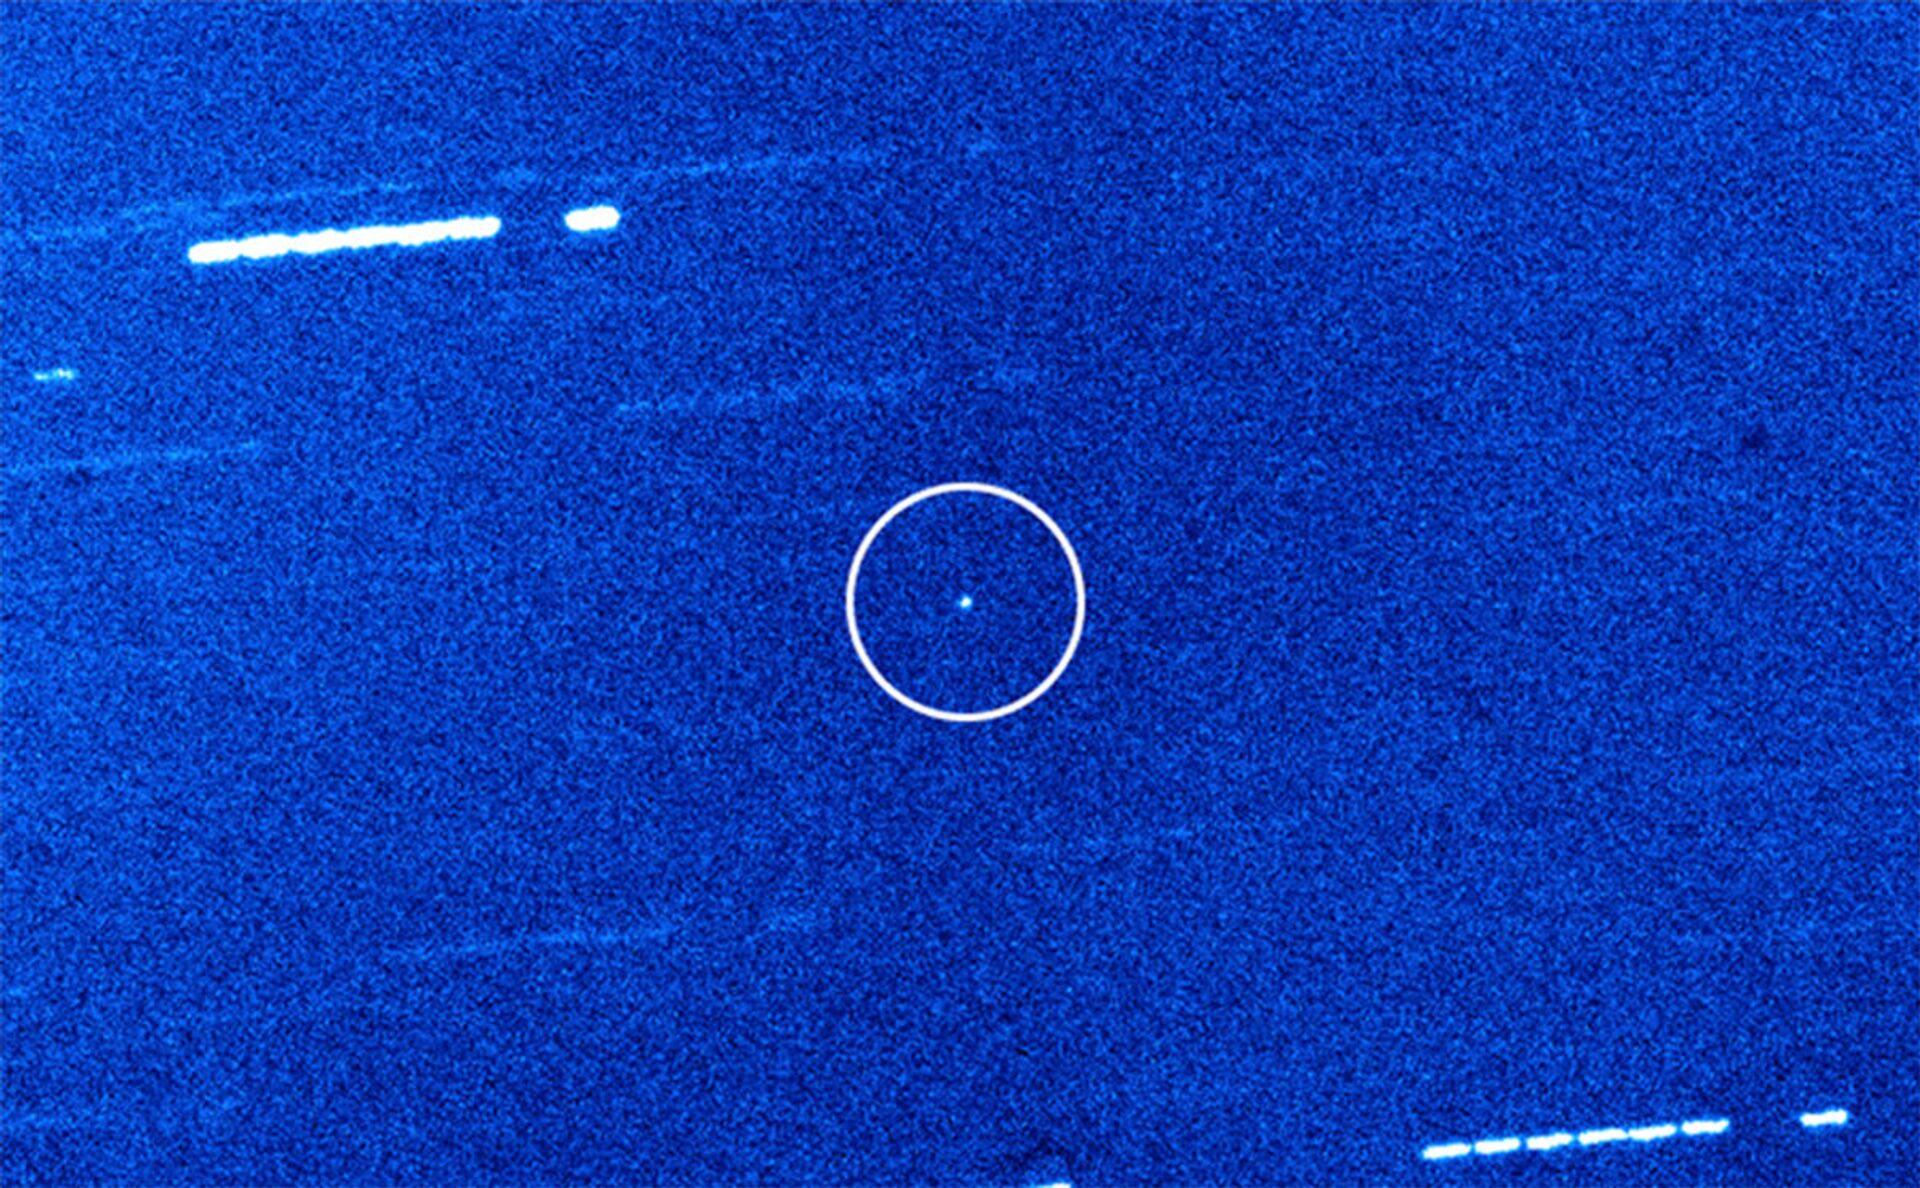 Cientistas teorizam que Oumuamua seja um iceberg de 'Plutão alienígena' - Sputnik Brasil, 1920, 19.03.2021